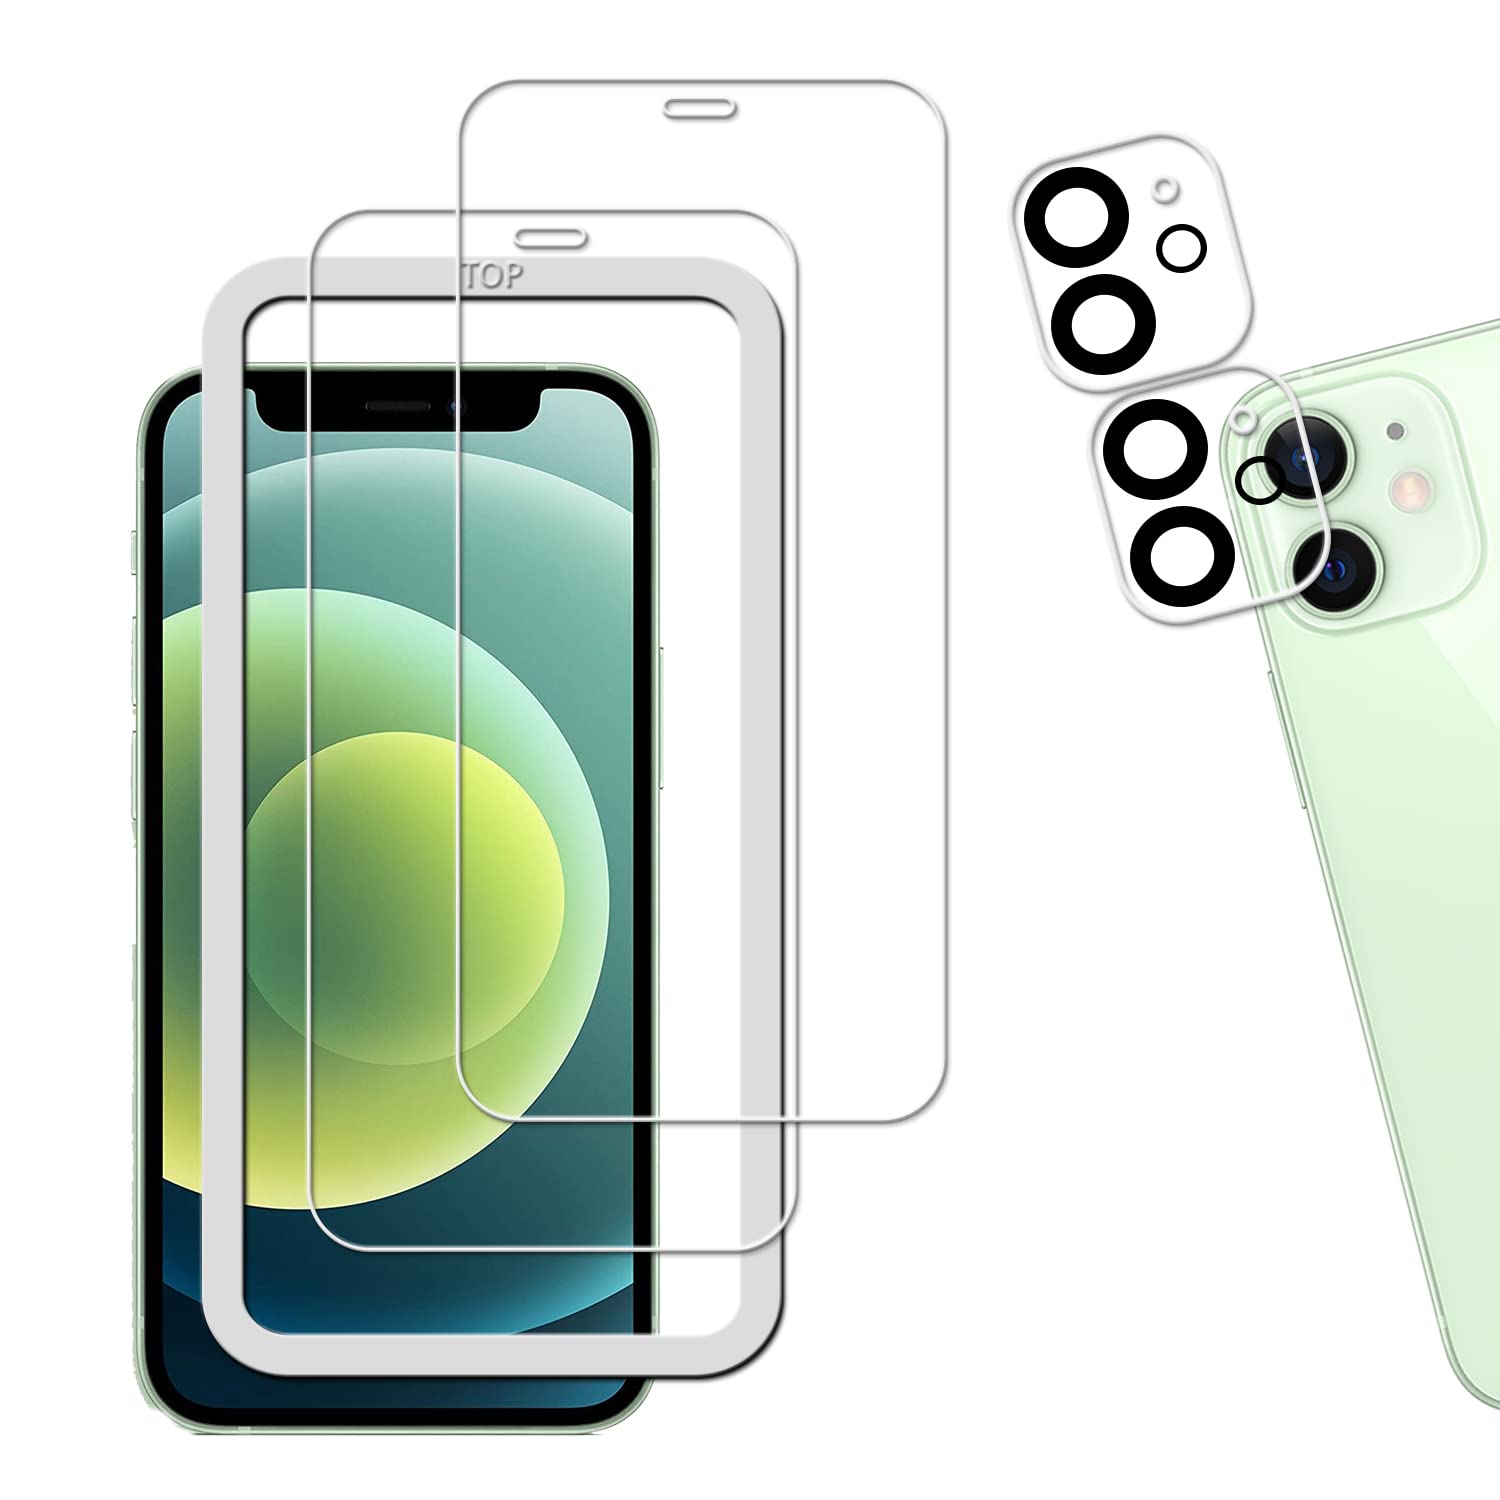 【ガイド枠付き 2+2枚セット】KPNS 日本素材製 強化ガラス iPhone12 mini 用 ガラスフィルム カメラフィルム カバー 保護フィルム